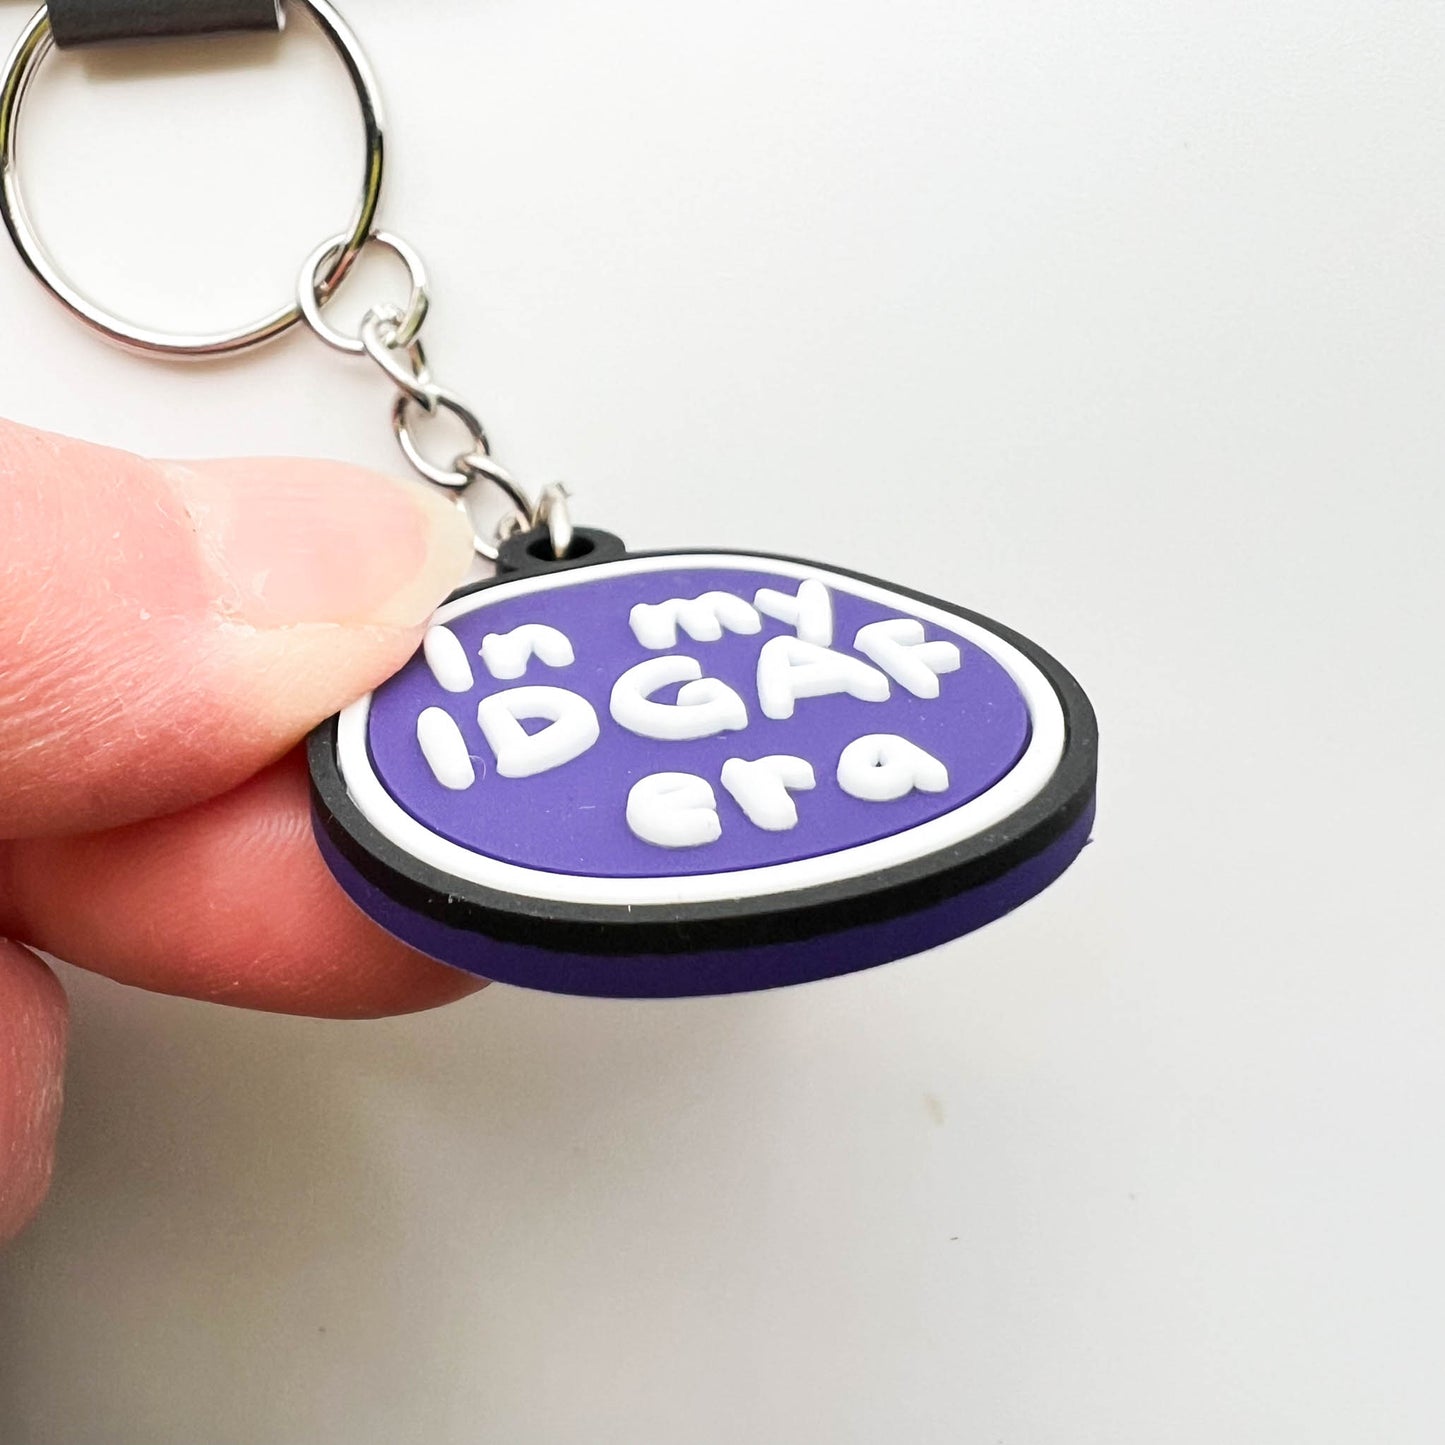 Gift for Friend - In my IDGAF Era Keychain